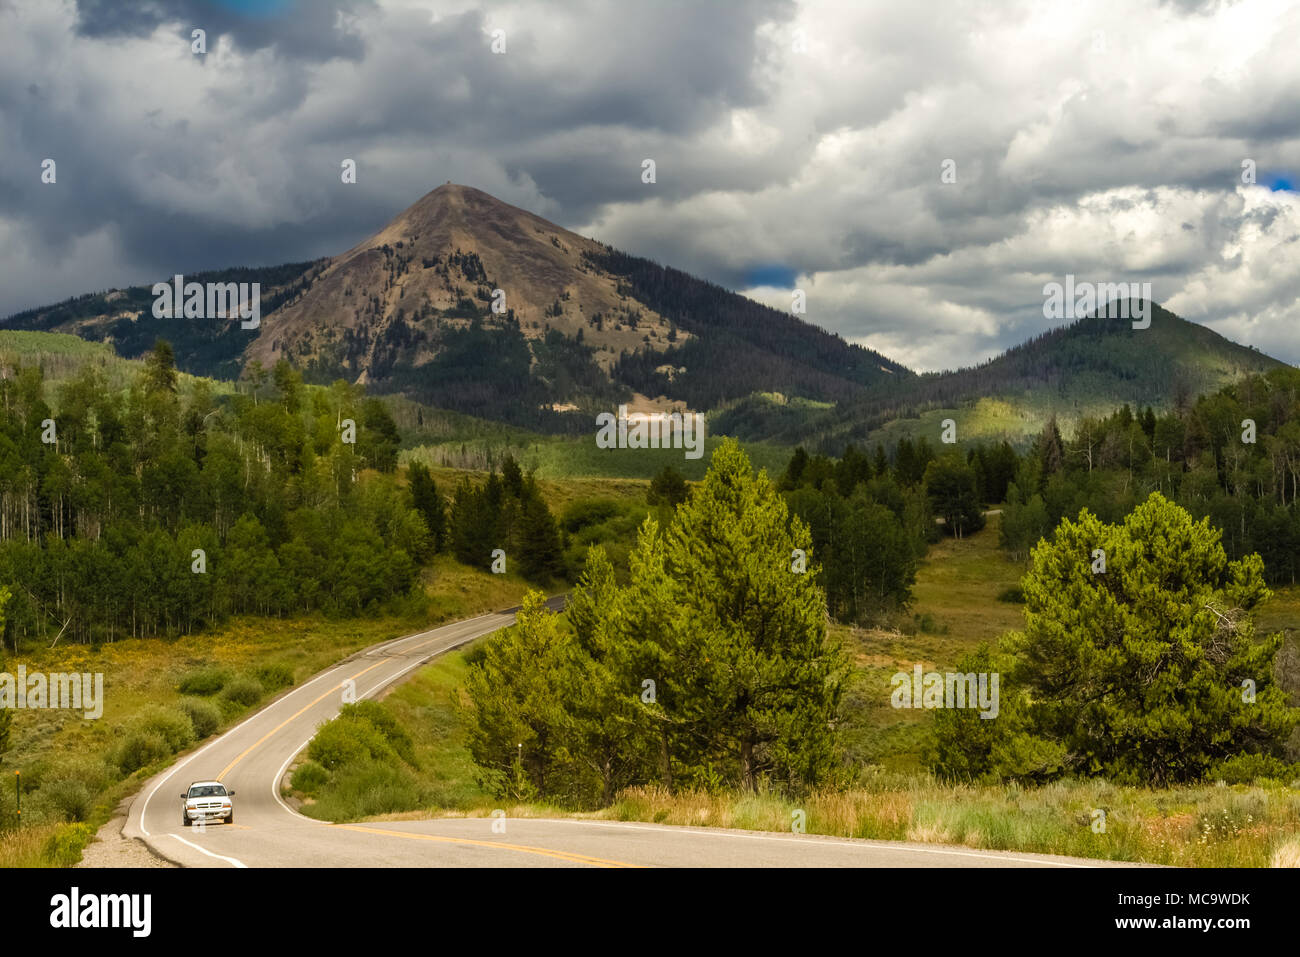 Vue d'une route entre les sommets des montagnes du Colorado, USA ; nuages orageux sur les sommets ; une voiture roulant Banque D'Images